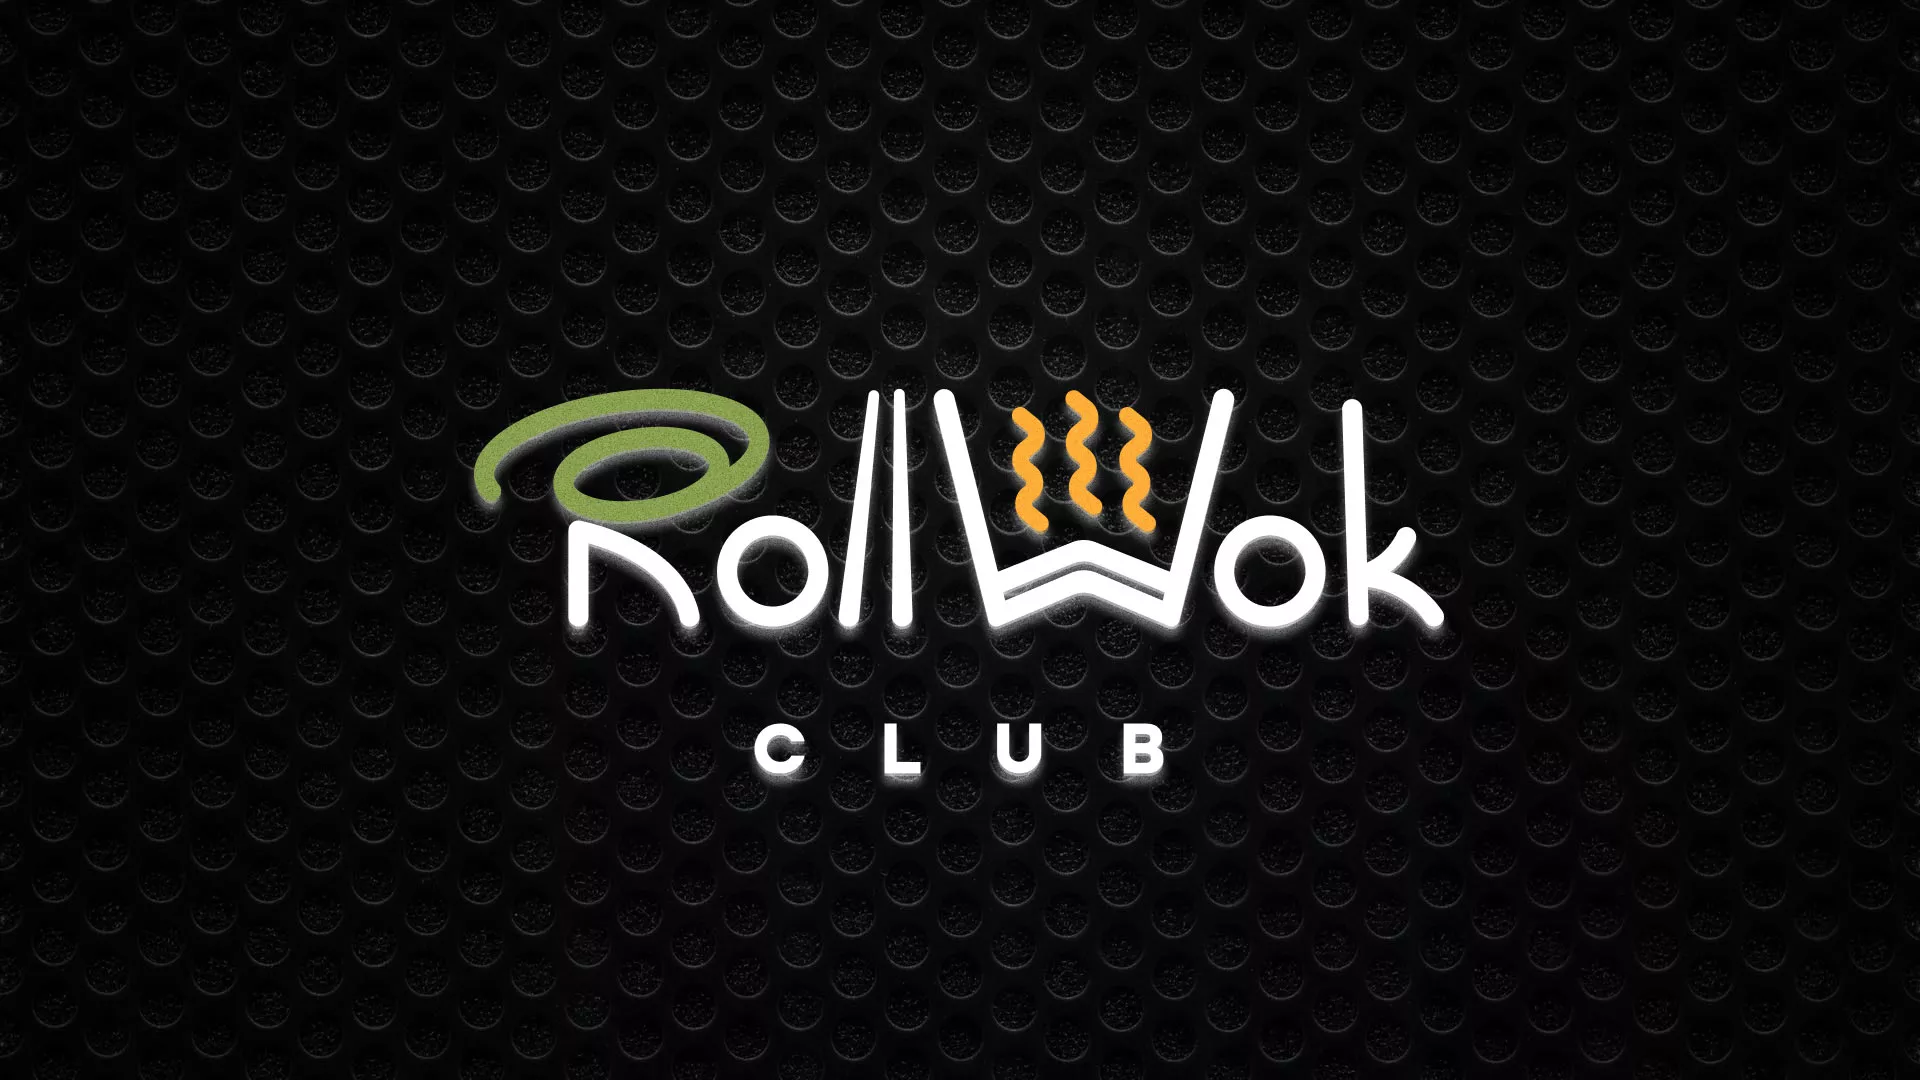 Брендирование торговых точек суши-бара «Roll Wok Club» в Хабаровске